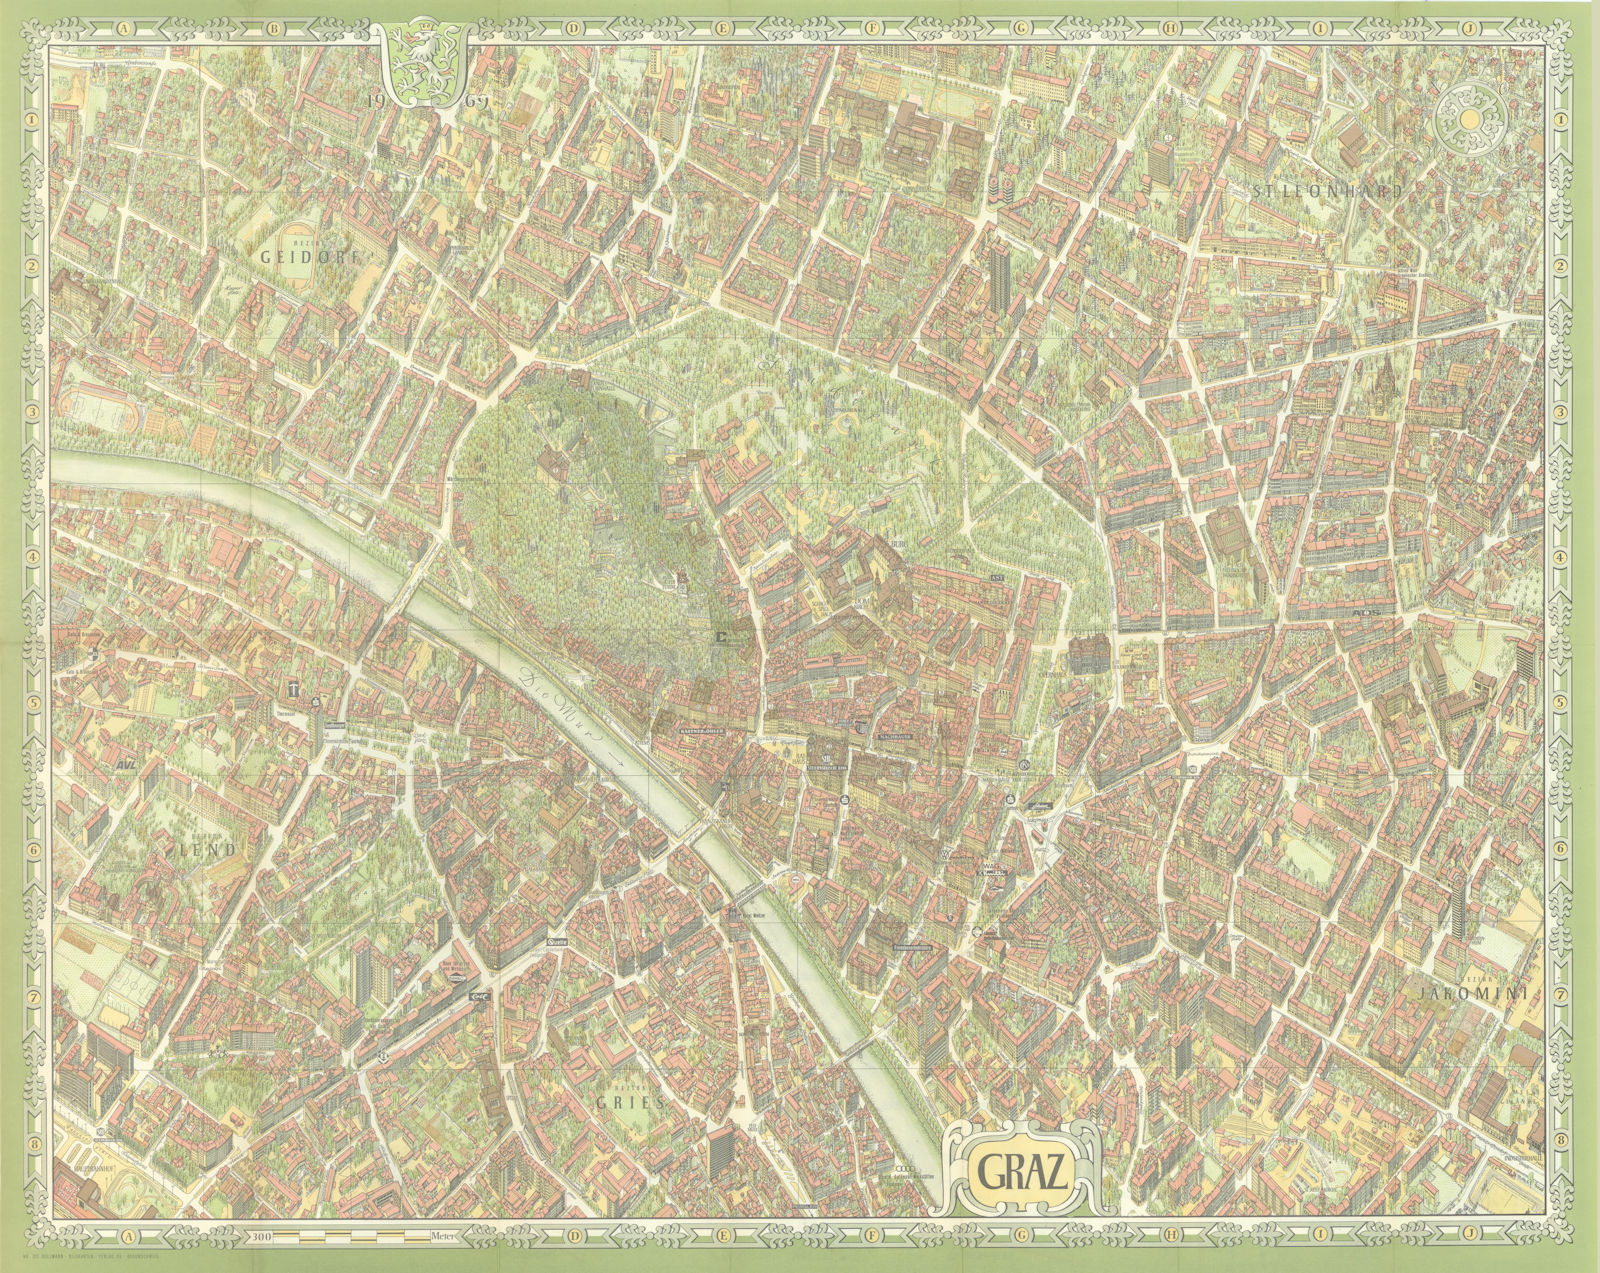 Associate Product Graz pictorial bird's eye view city plan. Austria. #102 BOLLMANN 1969 old map